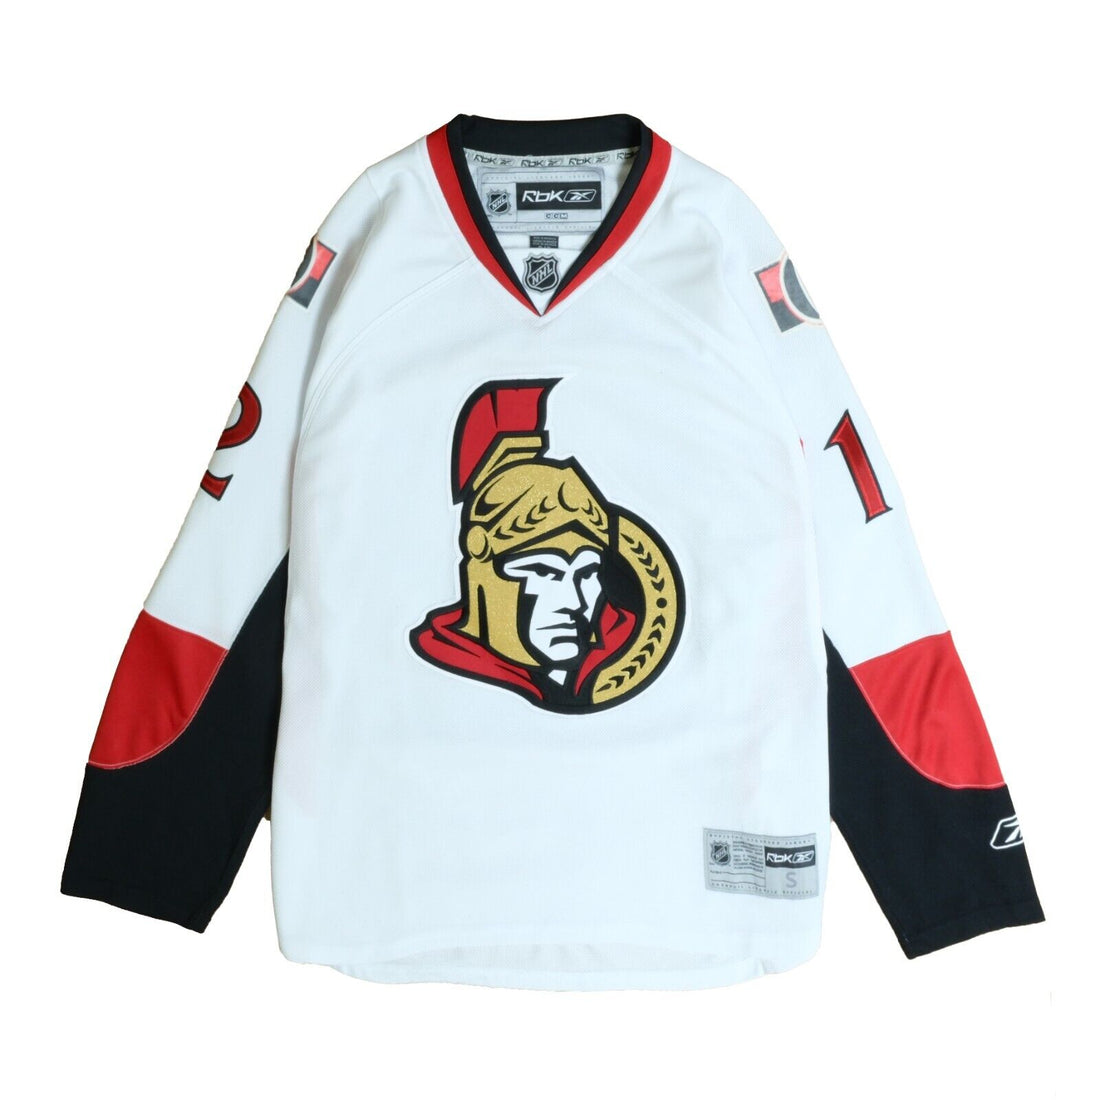 Reebok NHL Ottawa Senators SENS Hockey Jersey Youth Size S/M - New With Tags